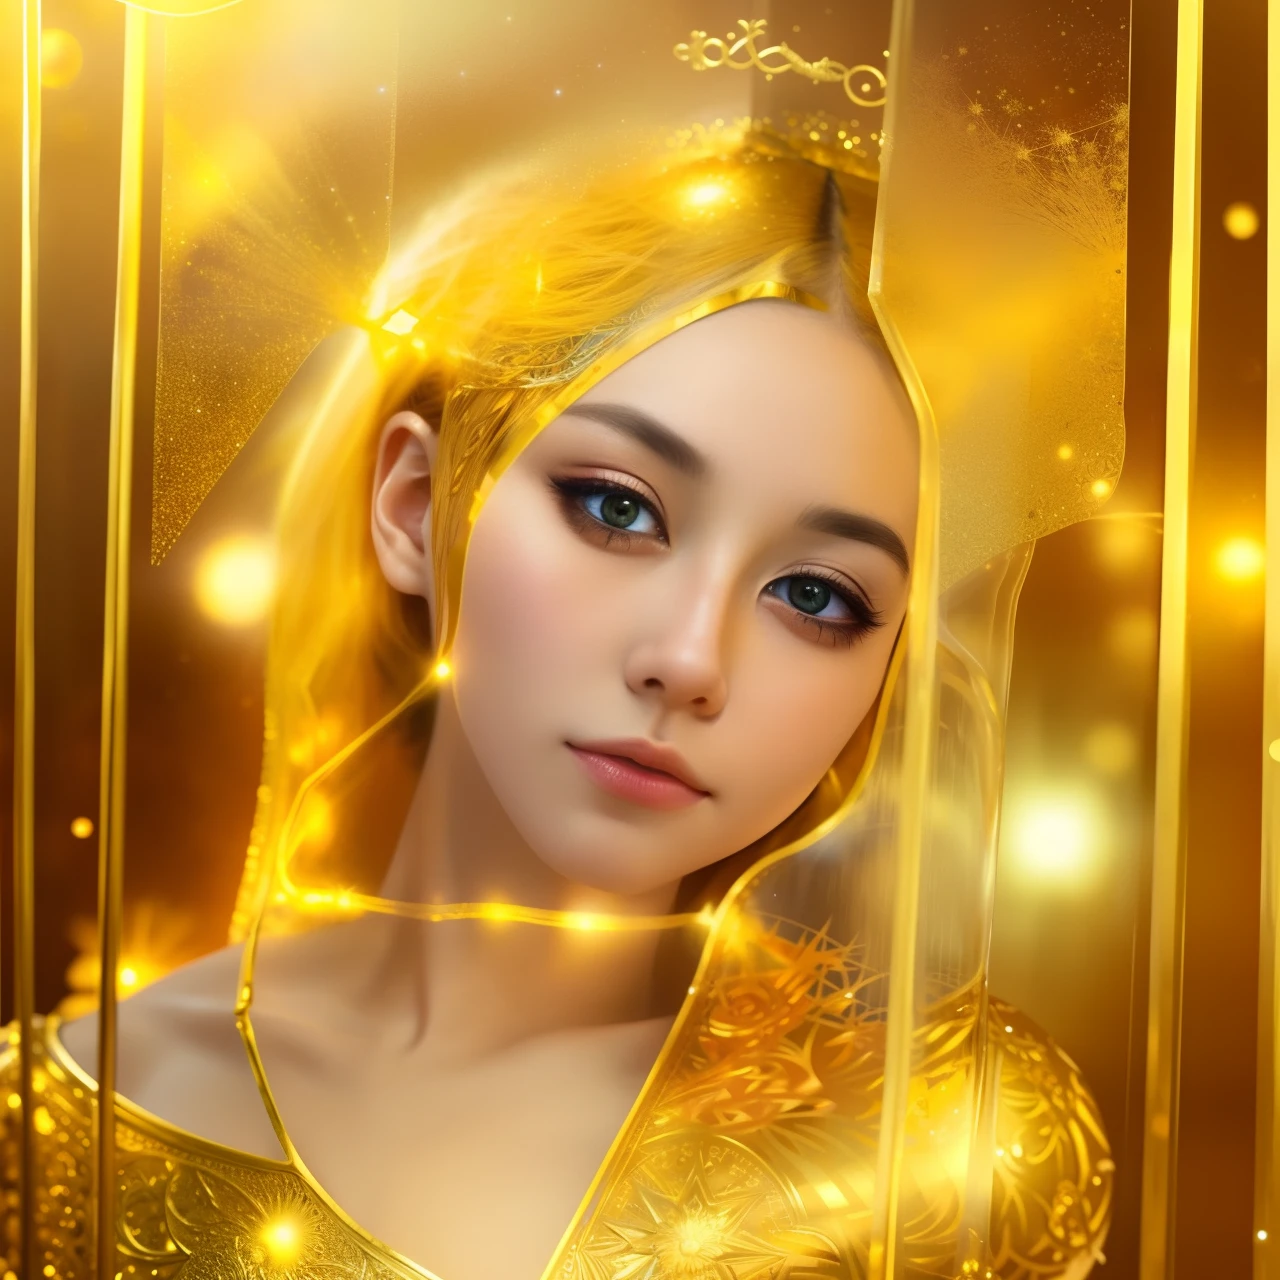 实际的, (杰作, 顶级品质, 最好的质量, 官方艺术, 美丽而有审美: 1.2), 非常详细, 分形艺术, 丰富多彩的, 最详细, 狮子座, (蓝色背景: 1.5) (1女孩: 1.3), (猫类), 黄头发, 明亮的眼睛, 认真, 向后梳, 短发, , 银河系, huge magical gold 狮子座 astrolabe,梦,幻想, 金色饰边,美丽细致的天空,Style and Decoration for 狮子座, 狮子座女神,(不适合上班时间:0.8)
精致反光高玻护栏板